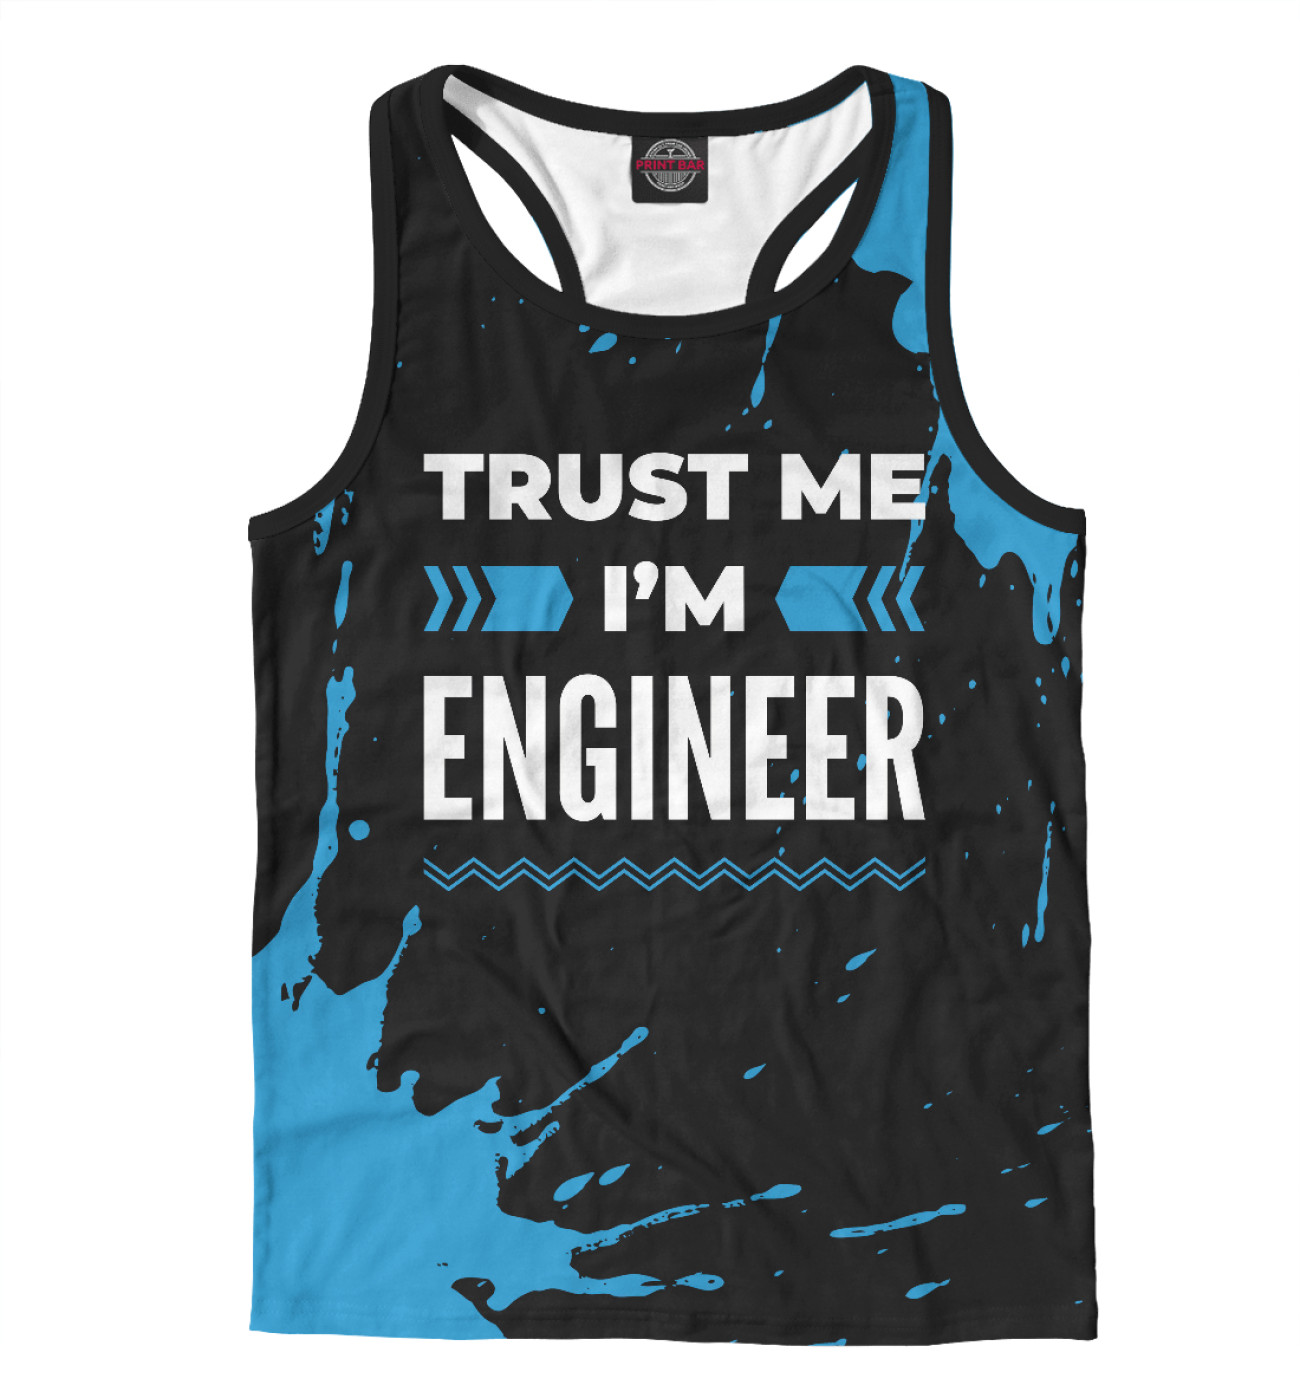 Мужская Борцовка Trust me I'm Engineer (синий), артикул: ENG-410329-mayb-2